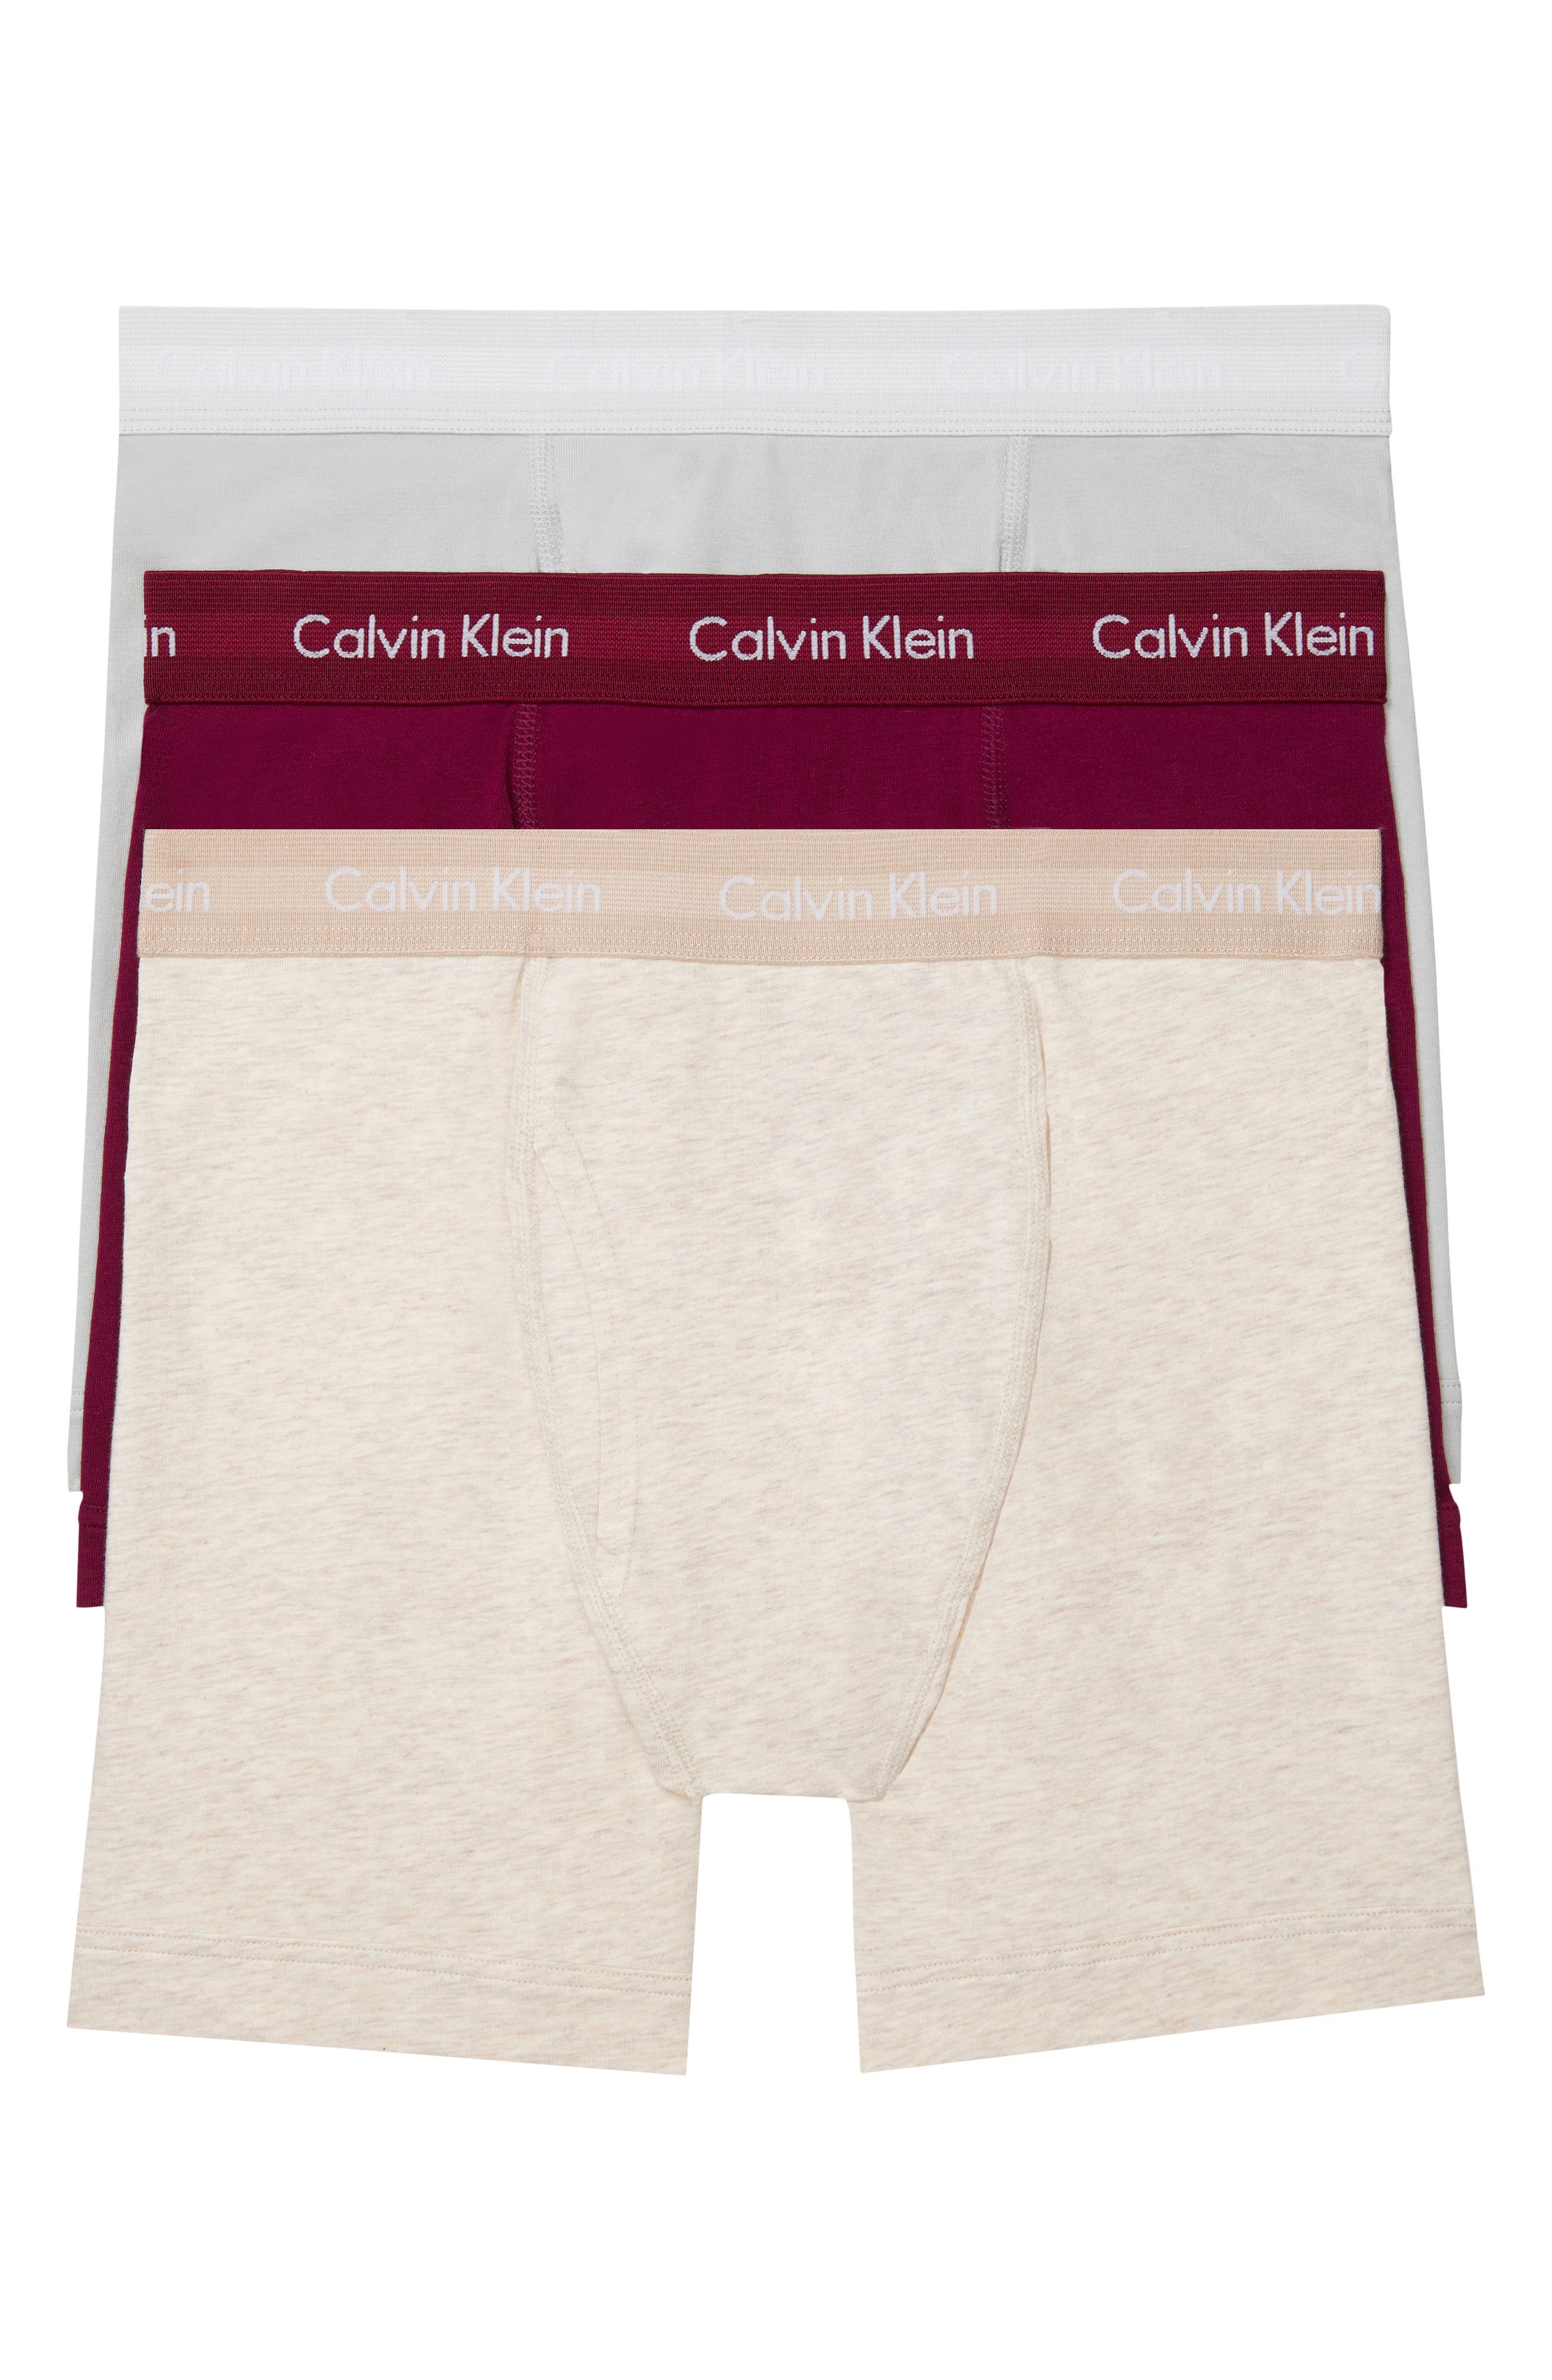 calvin klein cotton underwear